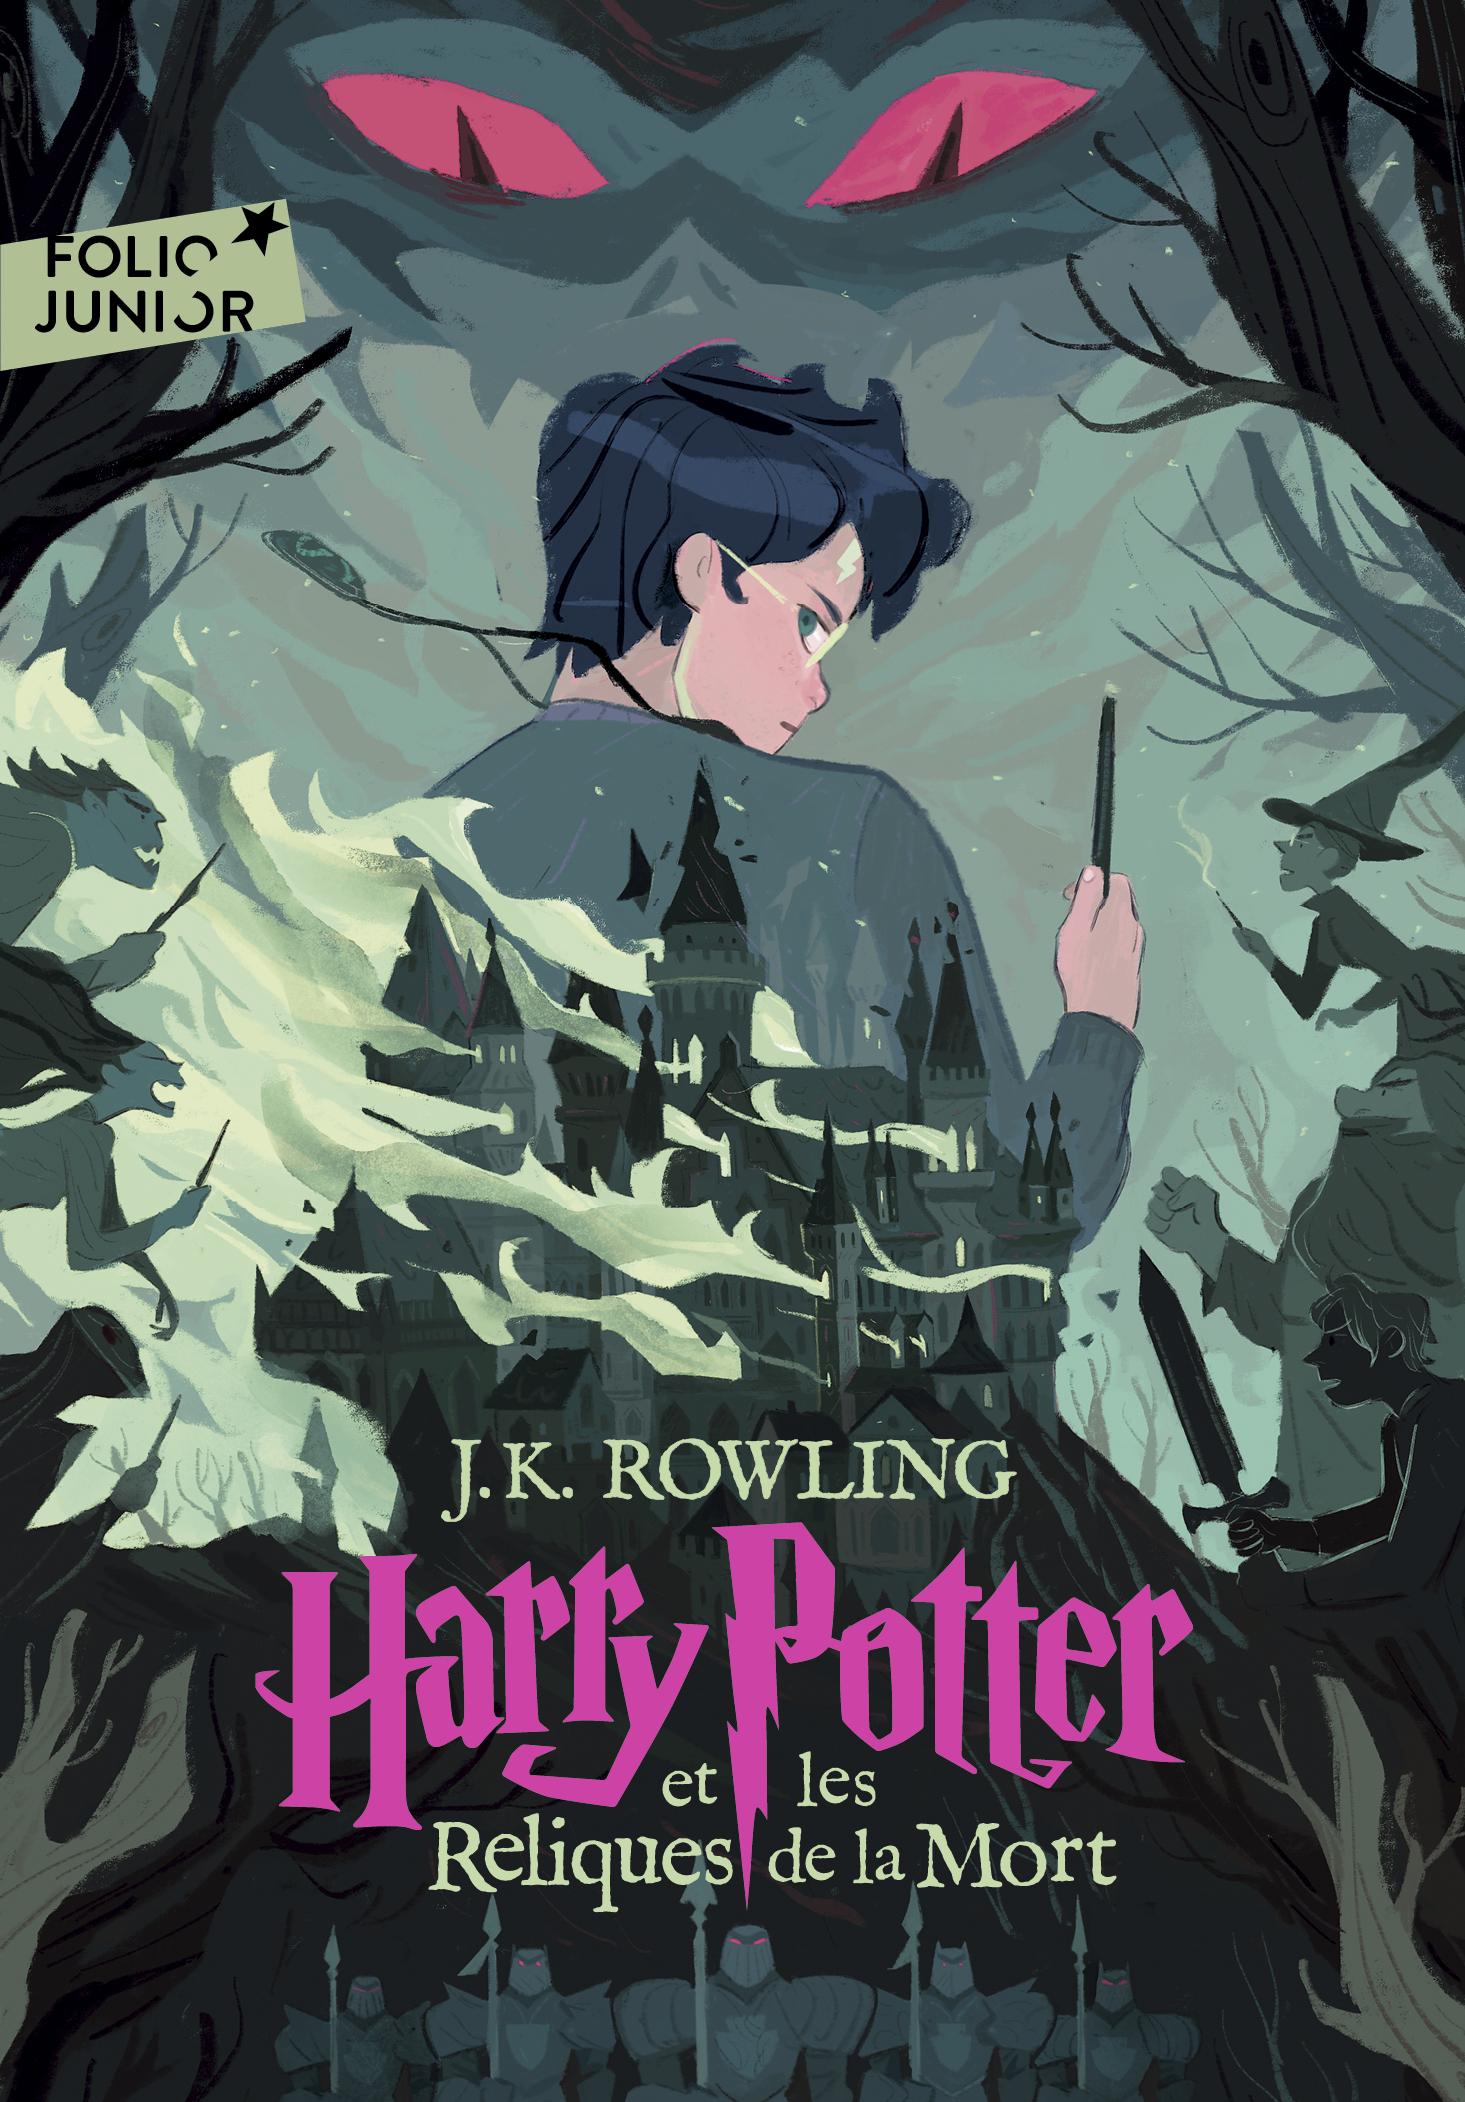 Le nouveau Harry Potter arrive en librairie au Québec ce soir à